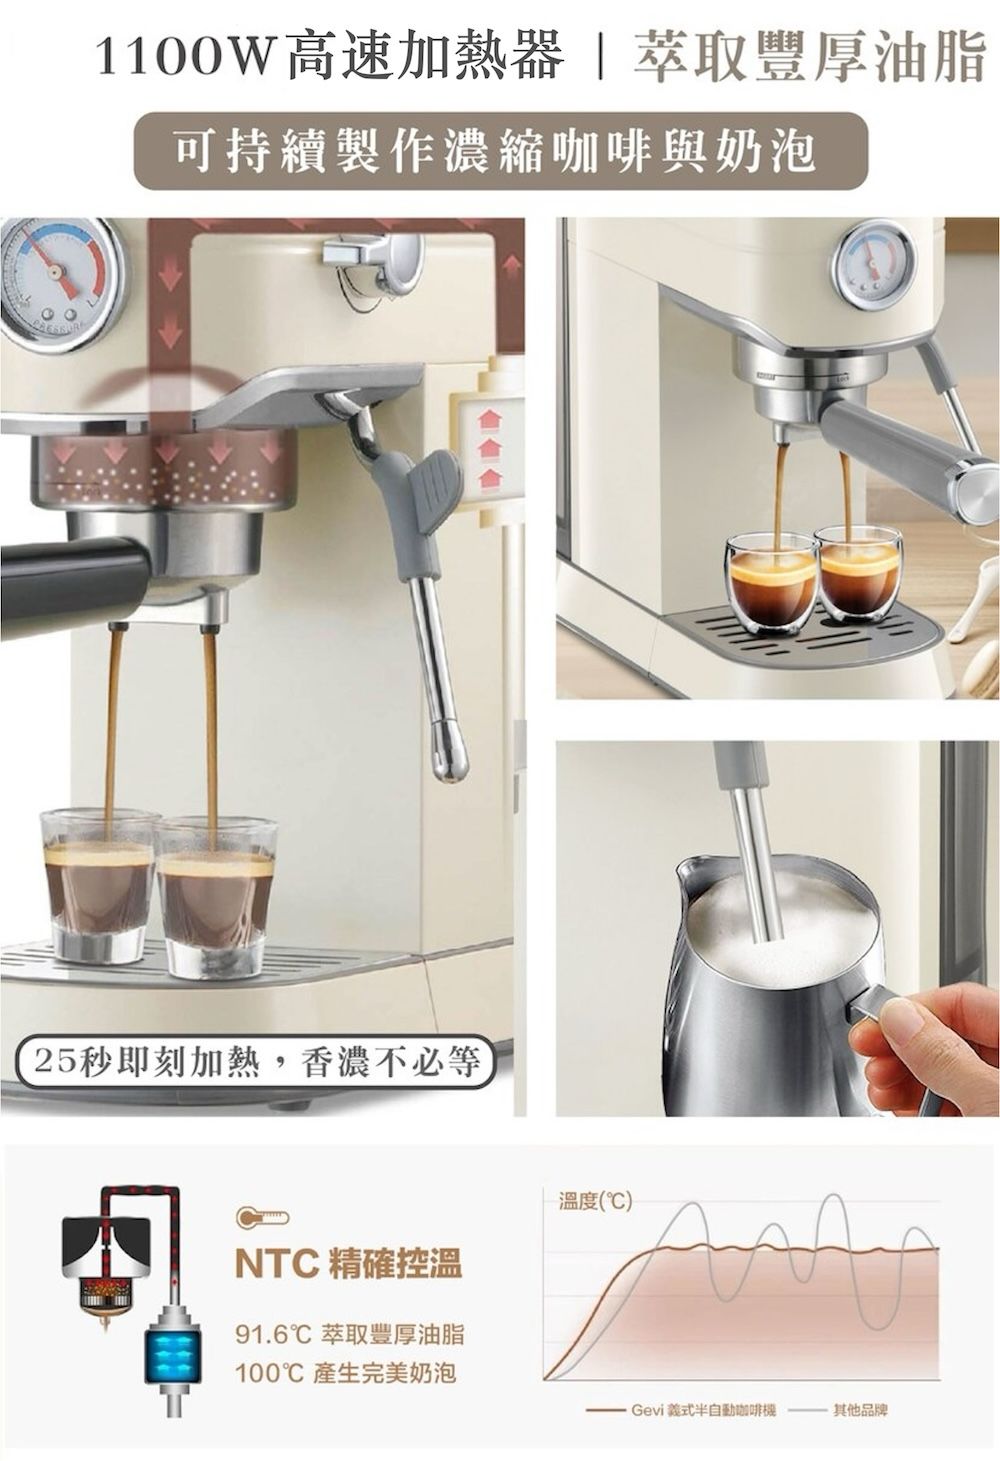 1100W高速加熱器萃取豐厚油脂可持續製作濃縮咖啡與奶泡25秒即刻加熱,香濃不必等TNTC 精確控溫91.6 萃取豐厚油脂100 產生完美奶泡溫度(℃)Gevi 義式半自動咖啡機其他品牌